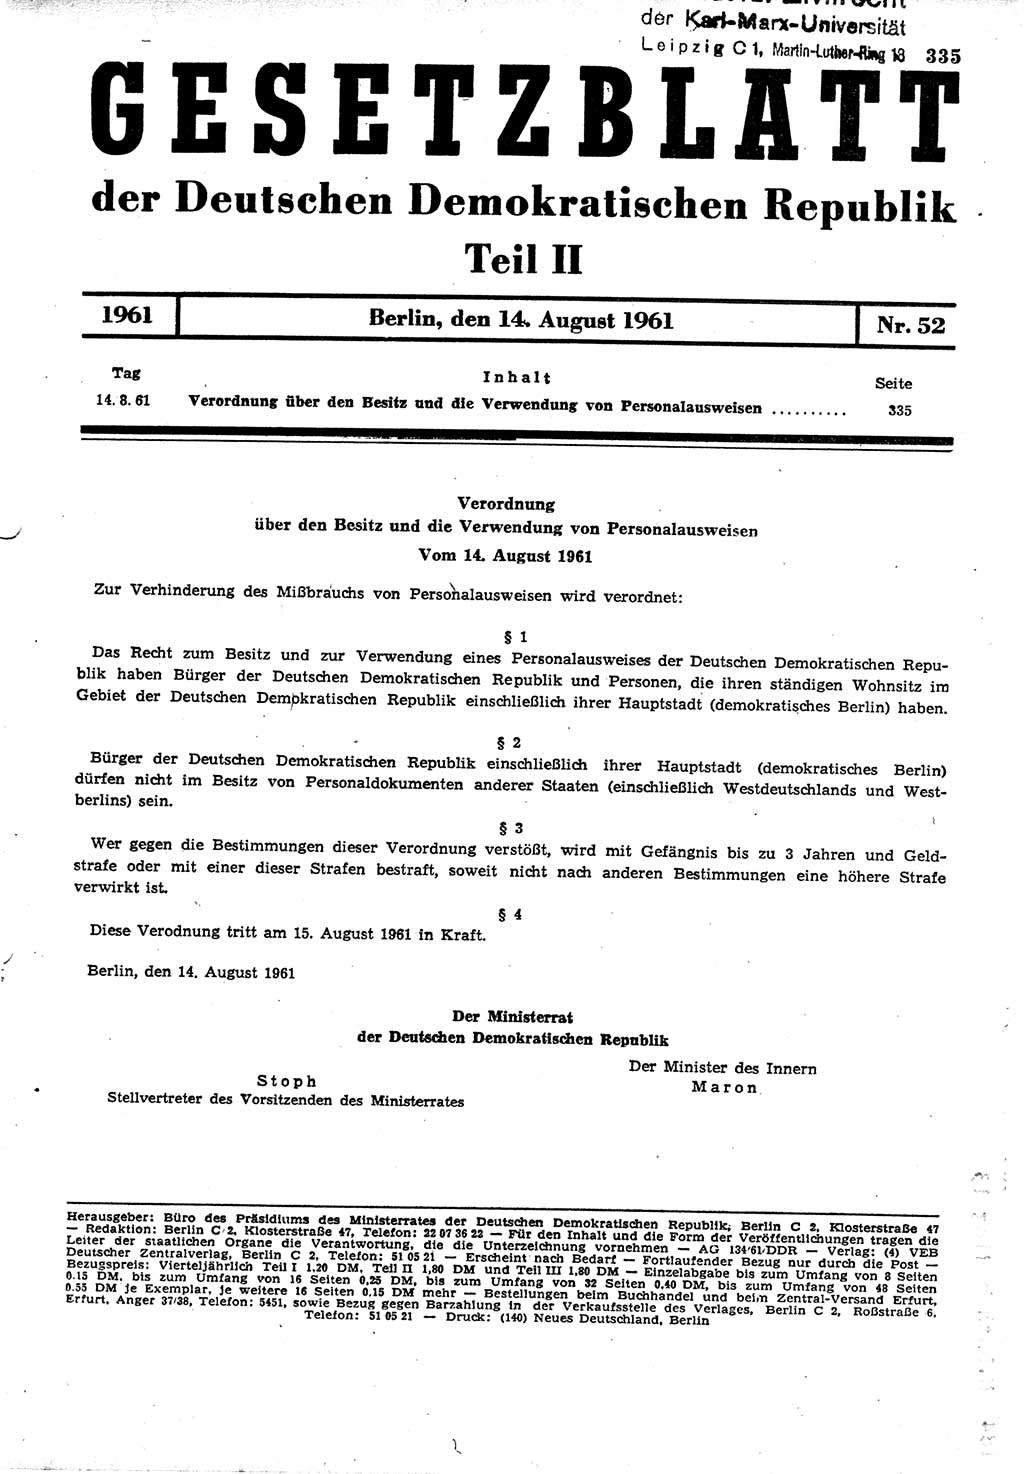 Gesetzblatt (GBl.) der Deutschen Demokratischen Republik (DDR) Teil ⅠⅠ 1961, Seite 335 (GBl. DDR ⅠⅠ 1961, S. 335)